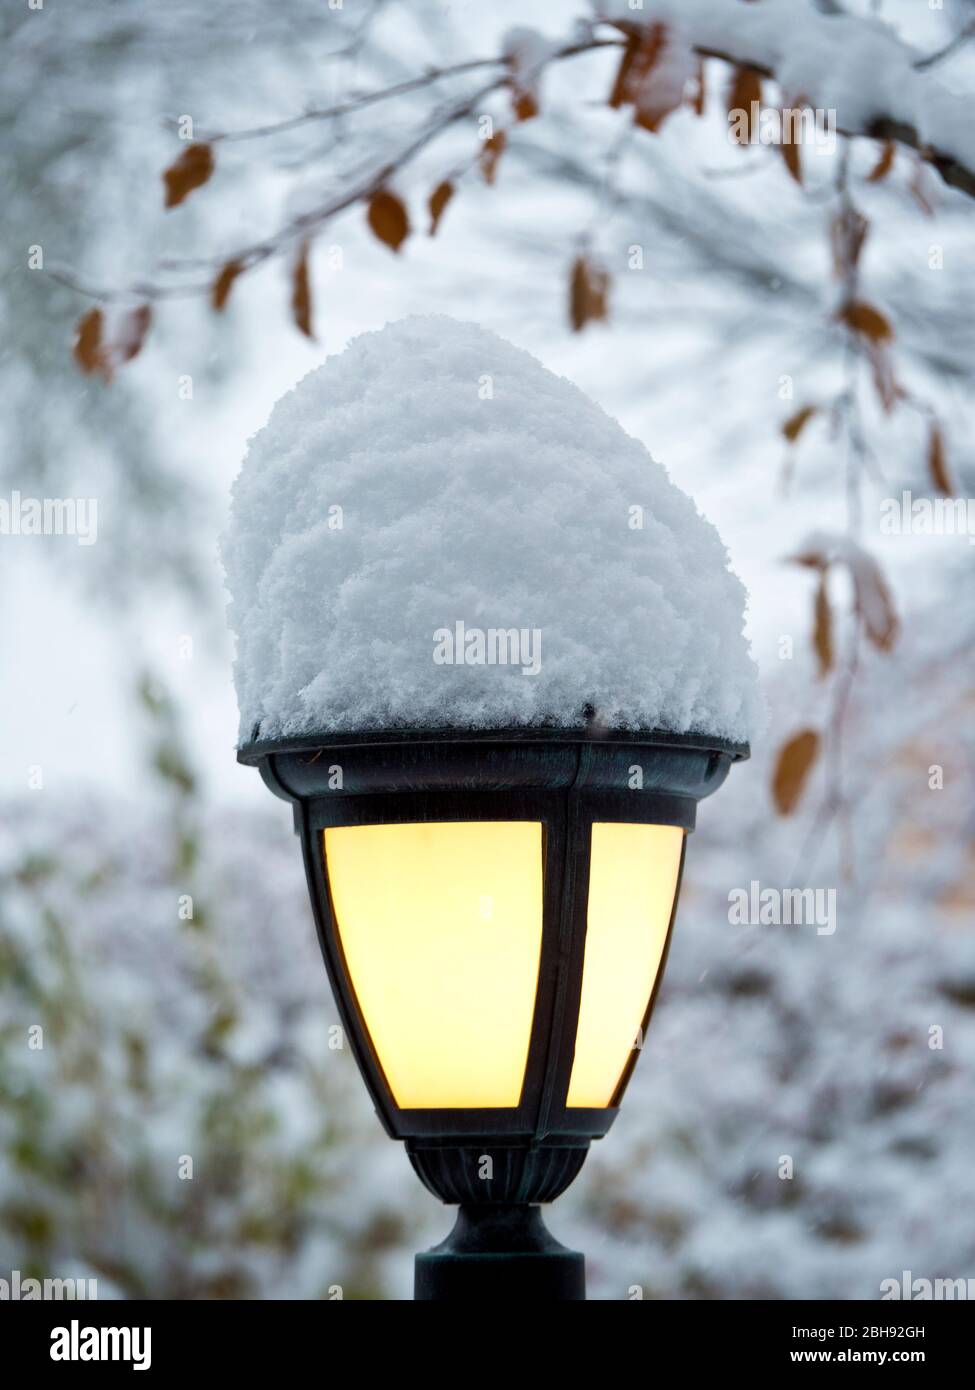 Schmiedeeiserne Lampe, im Freien, Winter, Schnee, gelb, kalt / warm,  einladend, Licht, Laterne, Leuchtfeuer, zuverlässig, Sicherheit, europäisch  Stockfotografie - Alamy